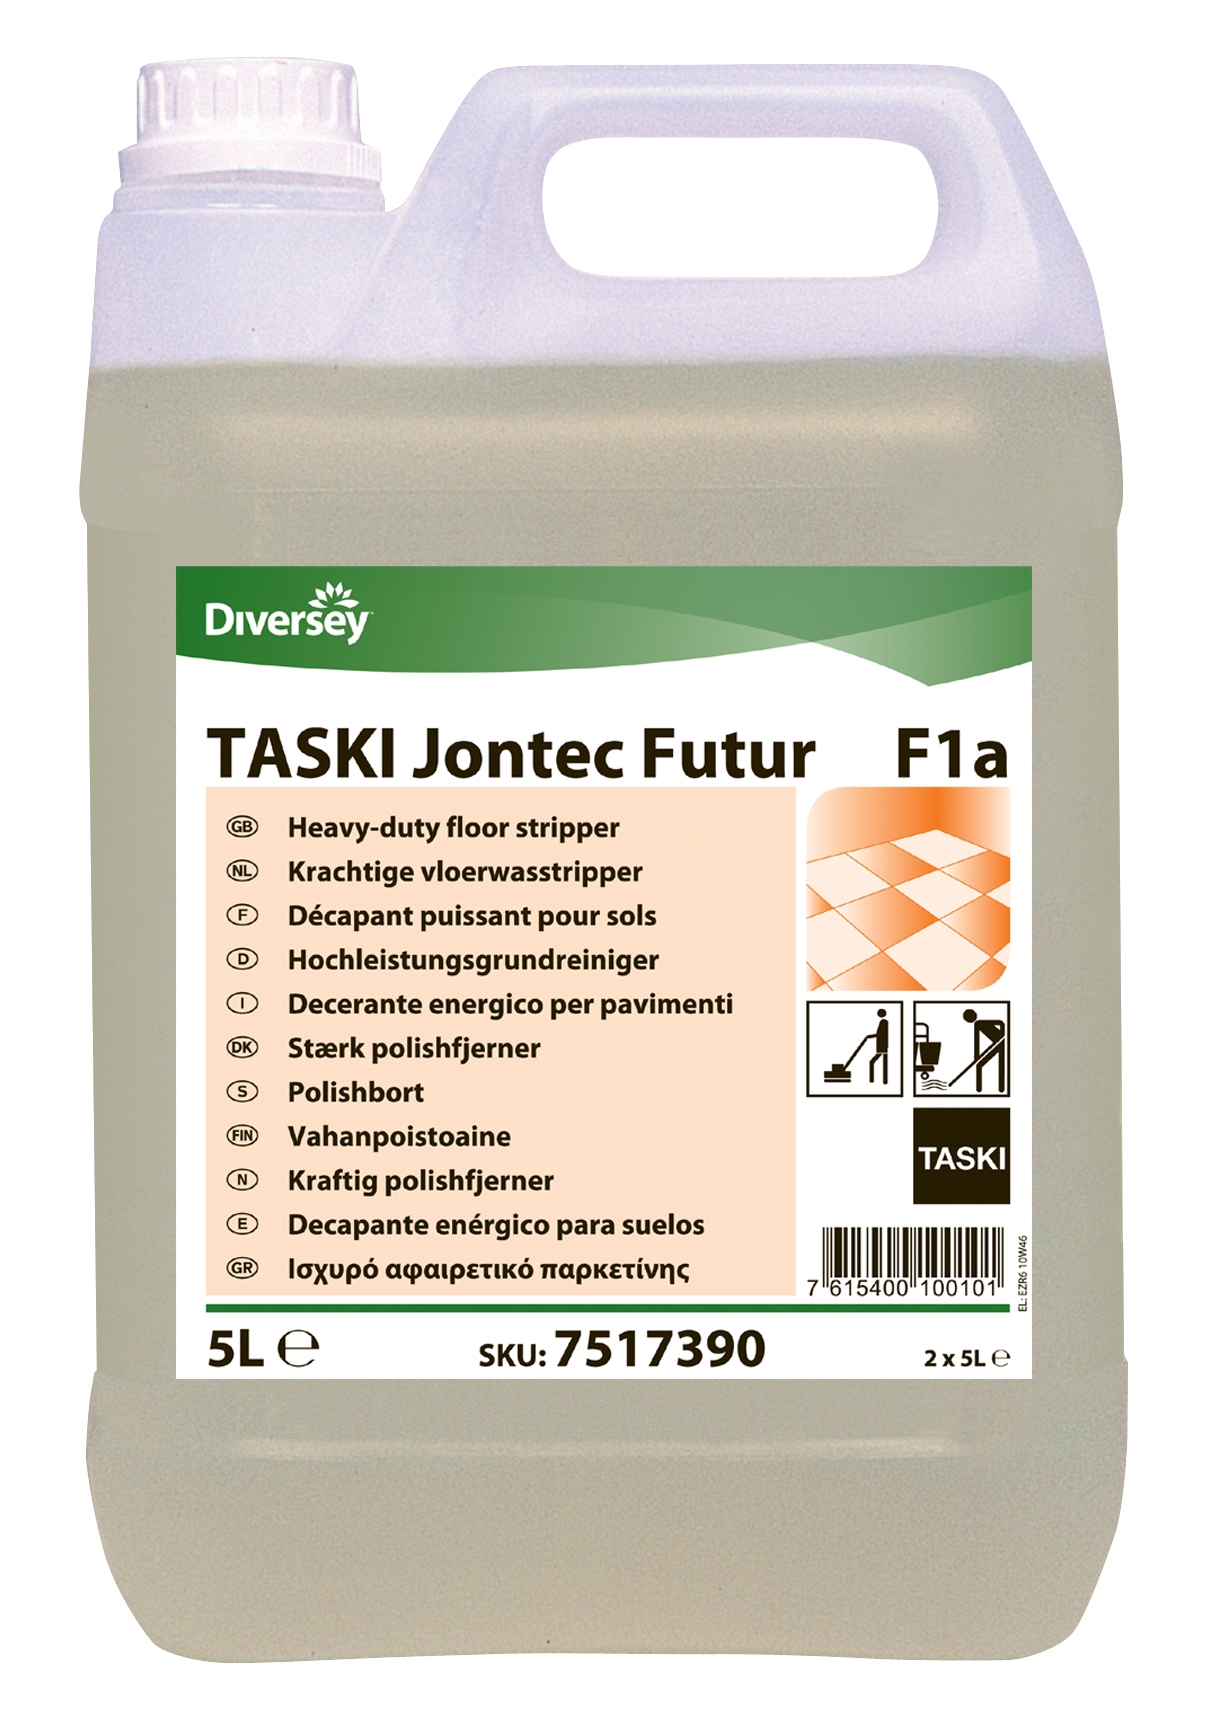 Taski Jontec Futur F1a Floor Cleaner